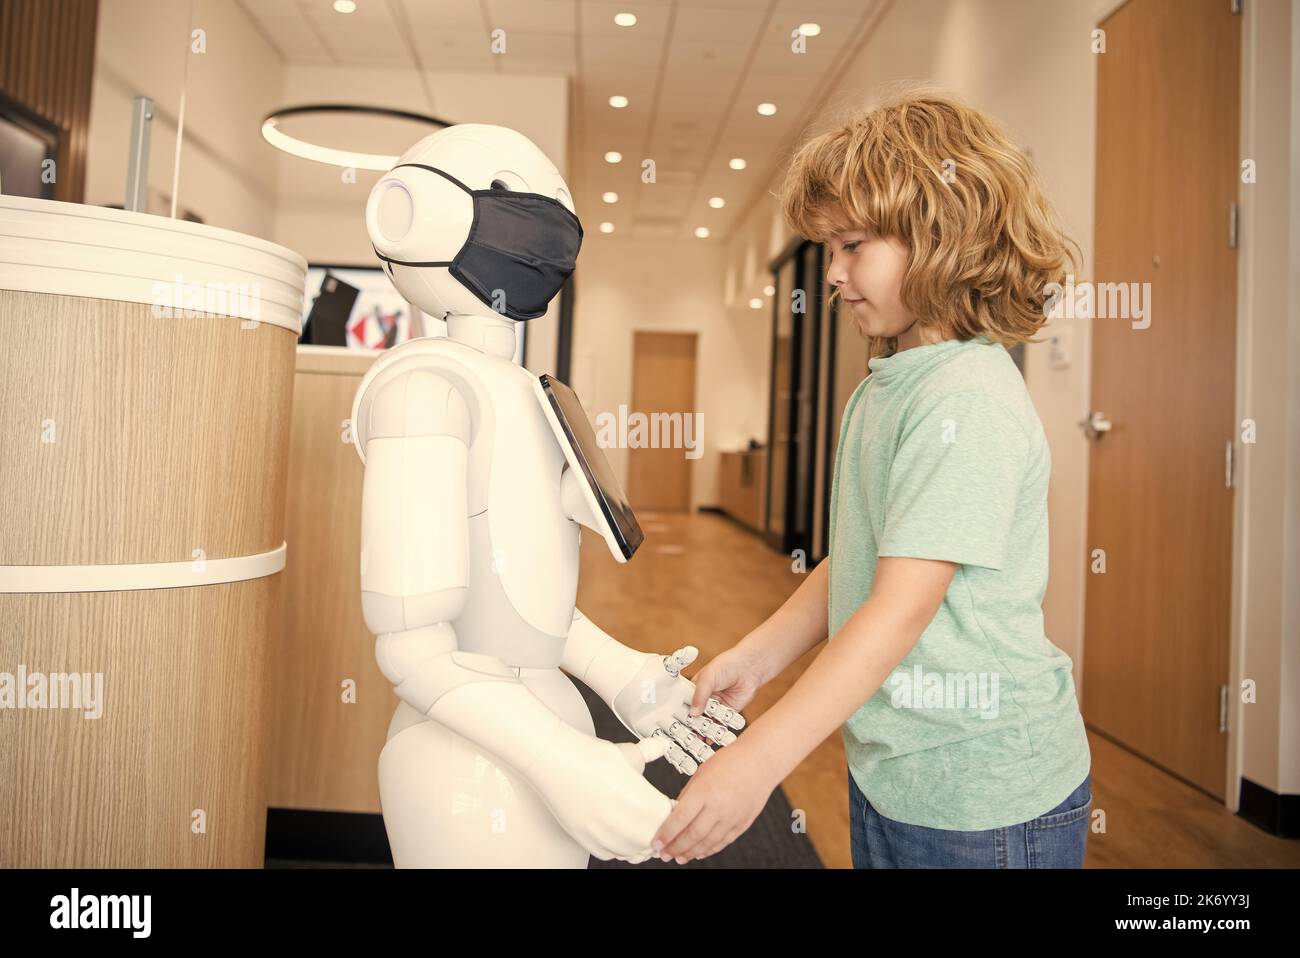 un petit garçon interagit avec le robot comme technologie innovante, communication Banque D'Images